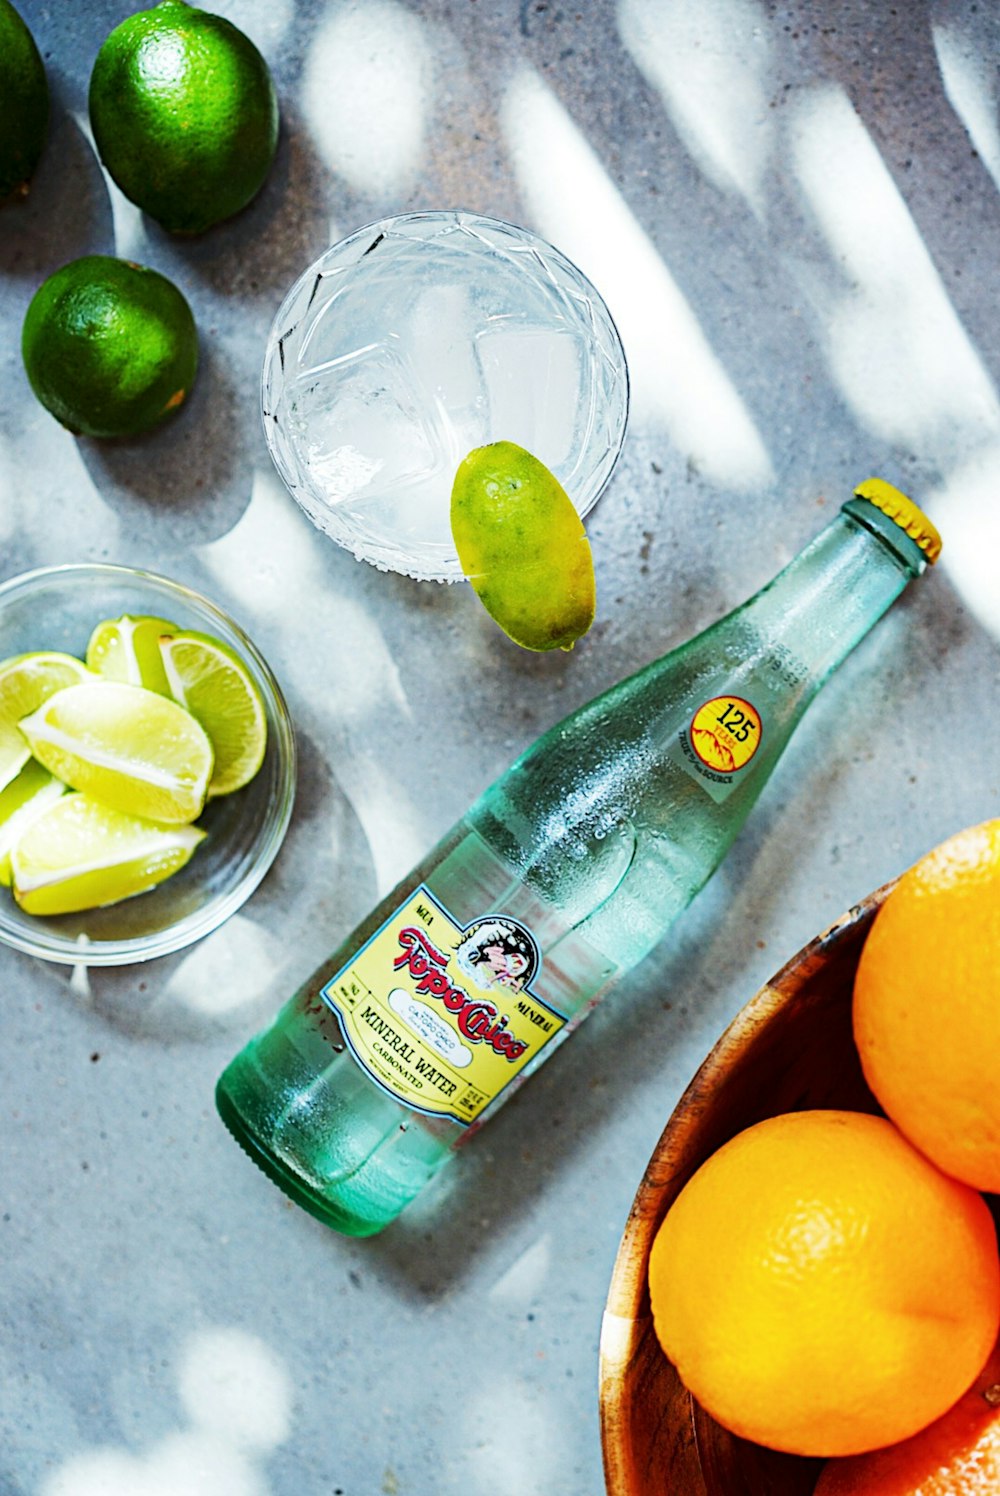 green glass bottle beside orange citrus fruit